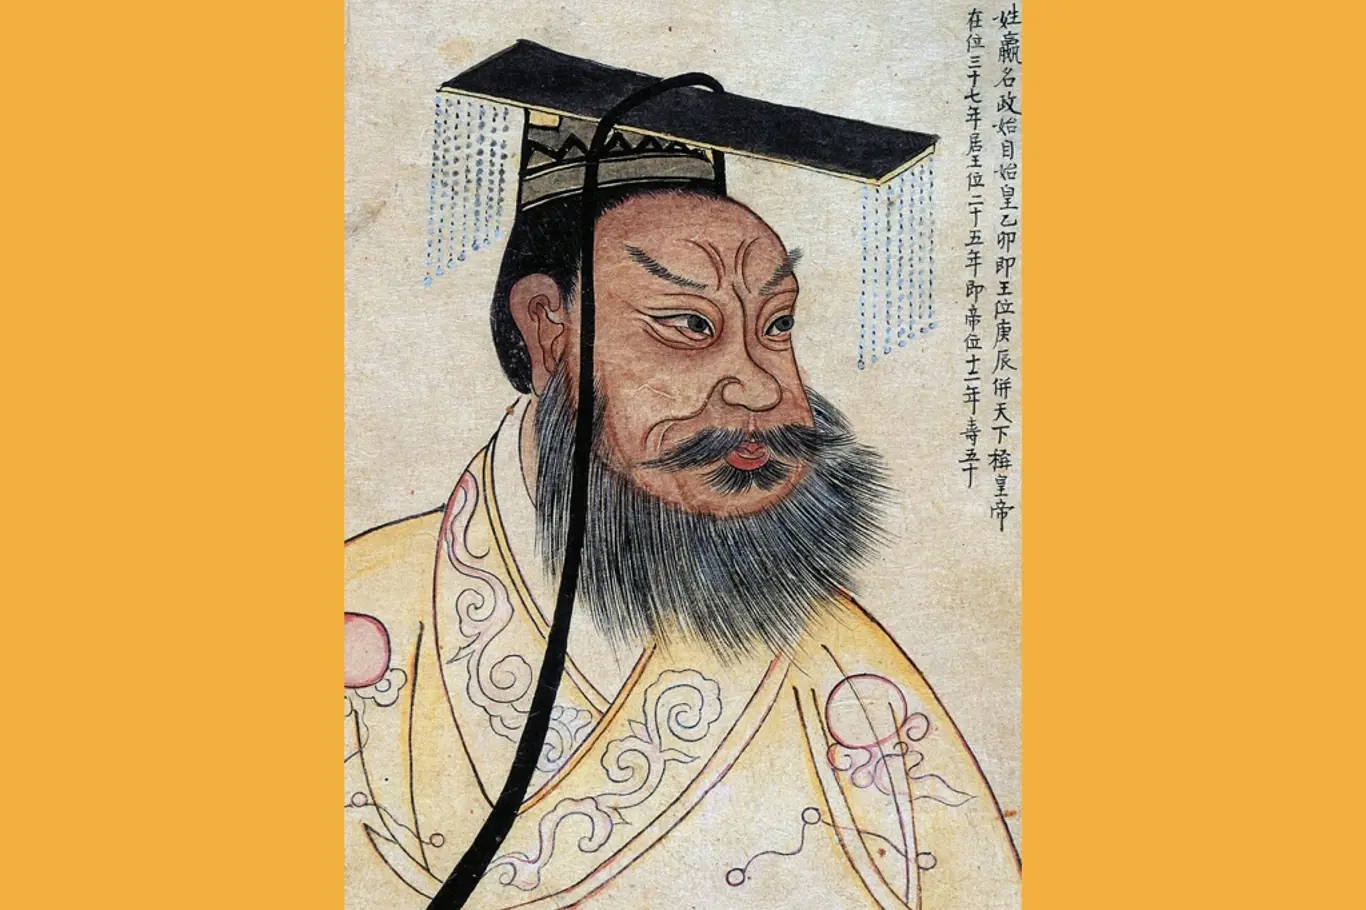 Čchin Š'-chuang na portrétu z 19. století s korejskými kolofony v albu s portréty slavných historických osobností. Jedná se o kopii čínského portrétu z roku 1609.